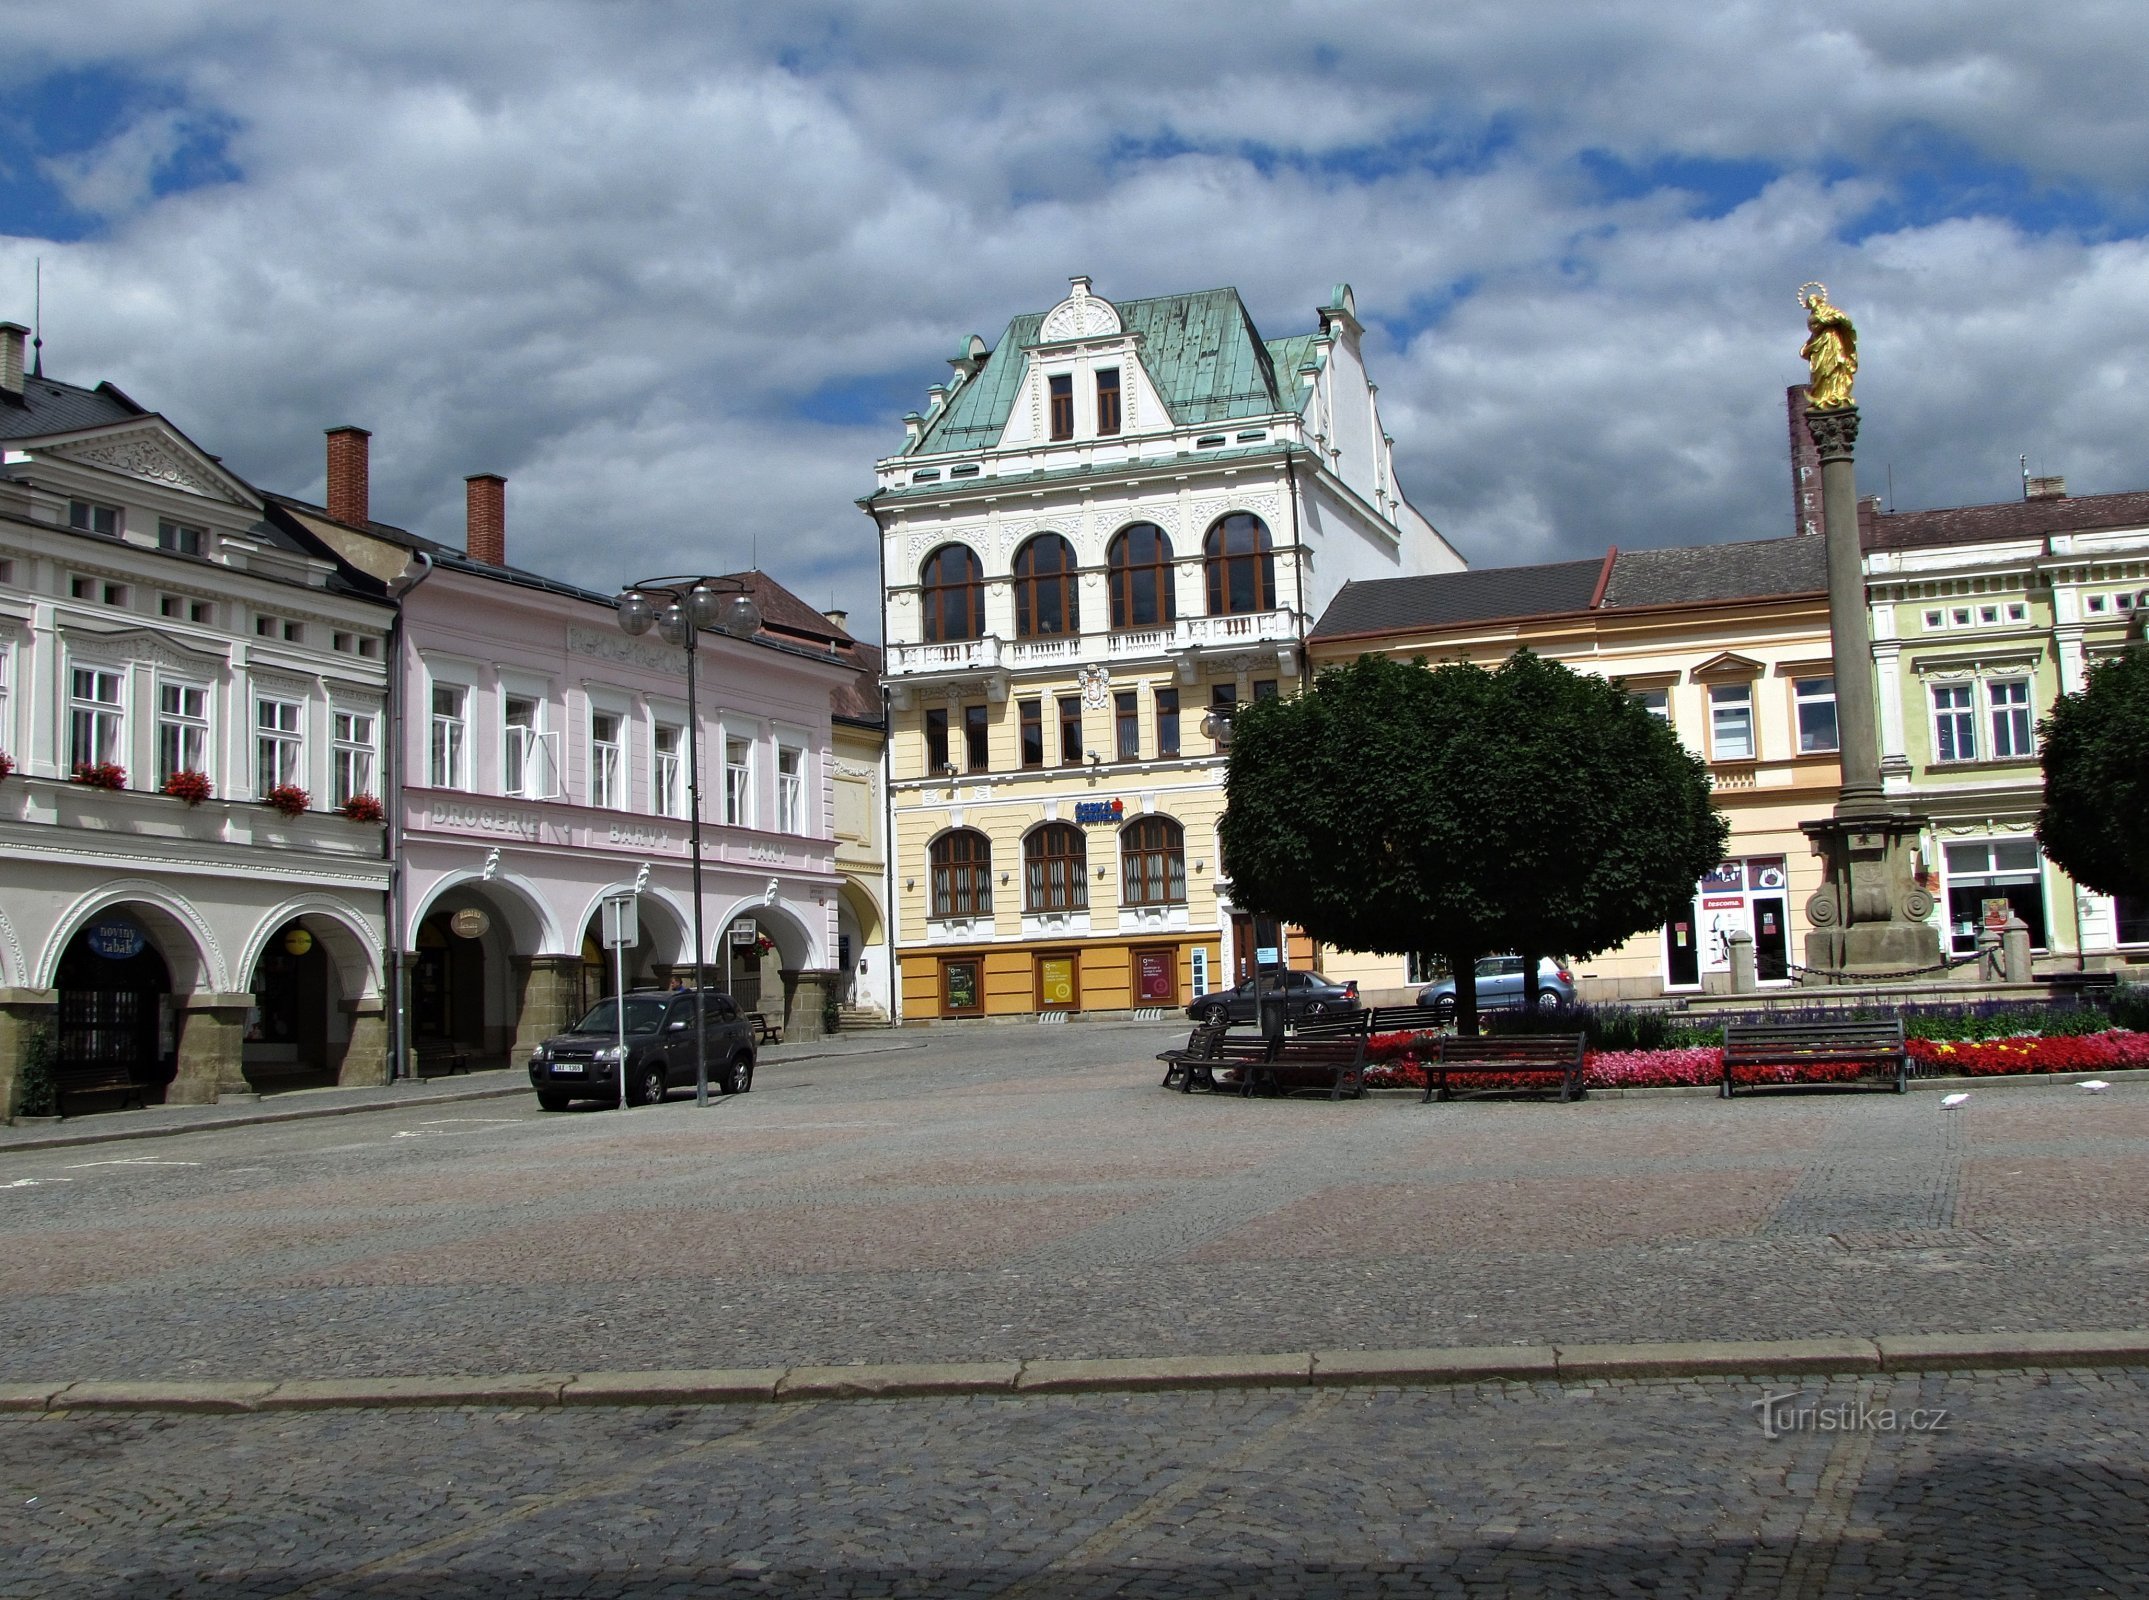 Ústí nad Orlicí - the most beautiful city market